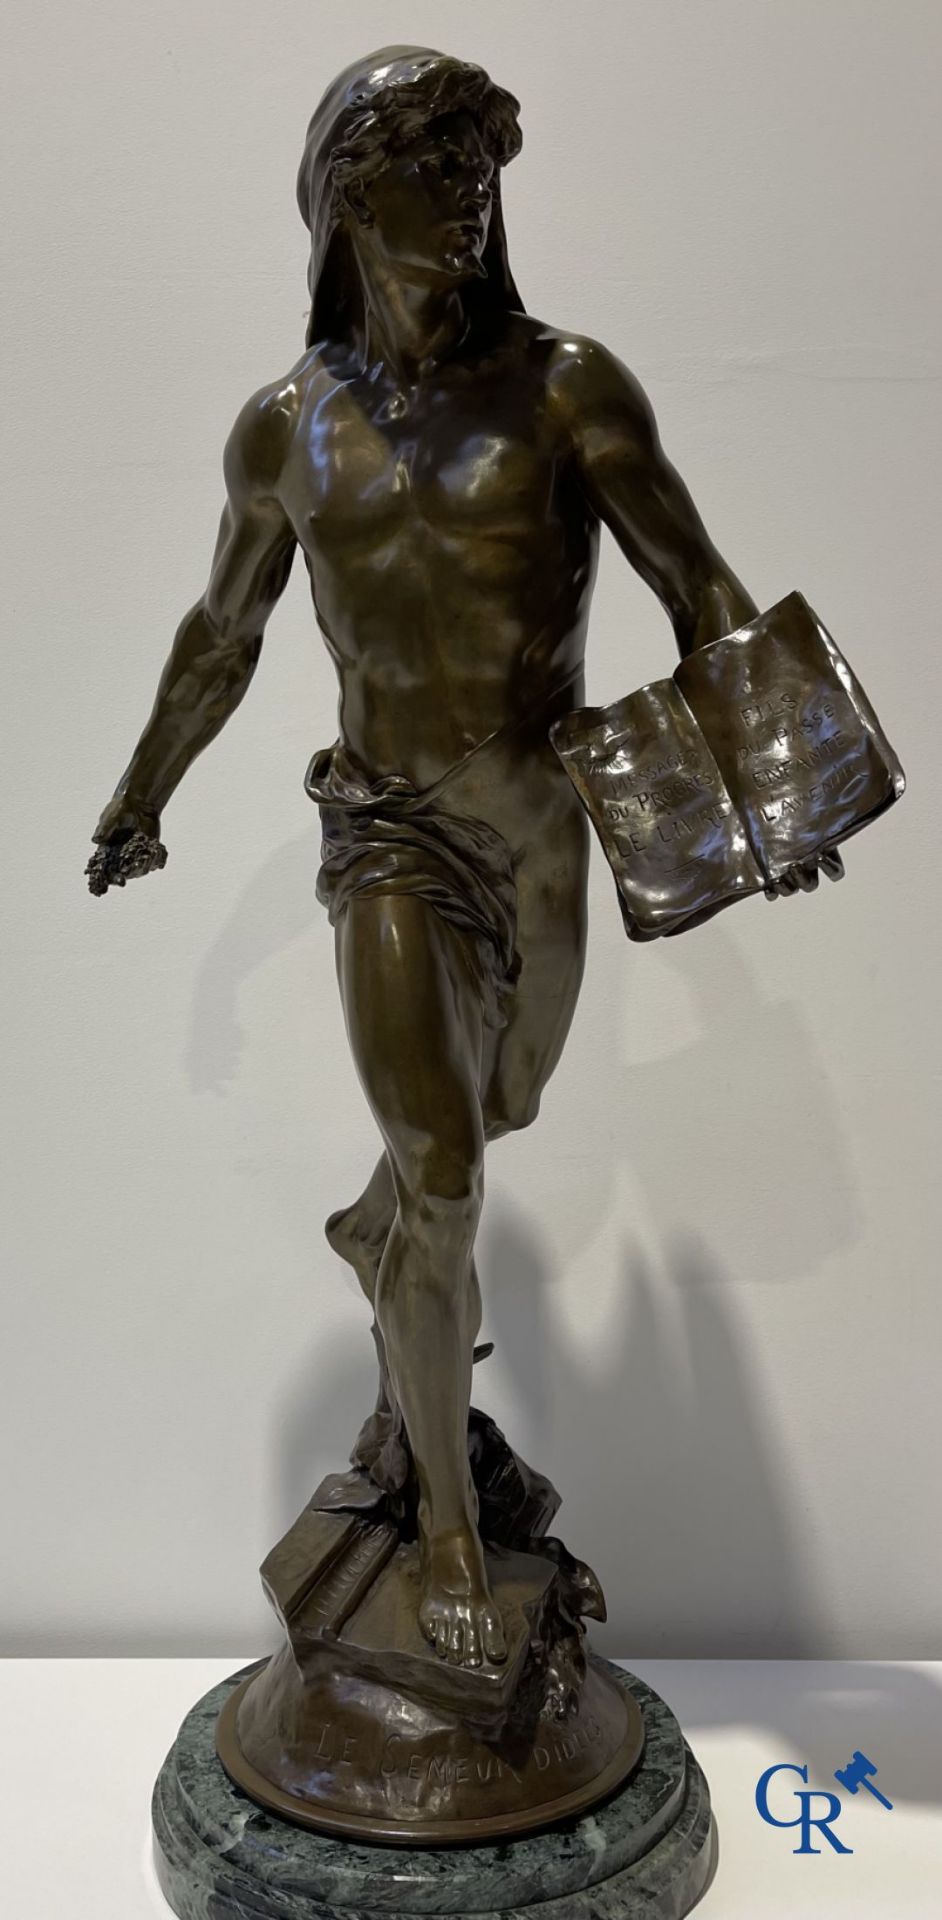 Emile Louis Picault (1833-1915) Large bronze statue "Le Semeur d'idées"
Foundry stamp Collin & Cie P - Image 4 of 16